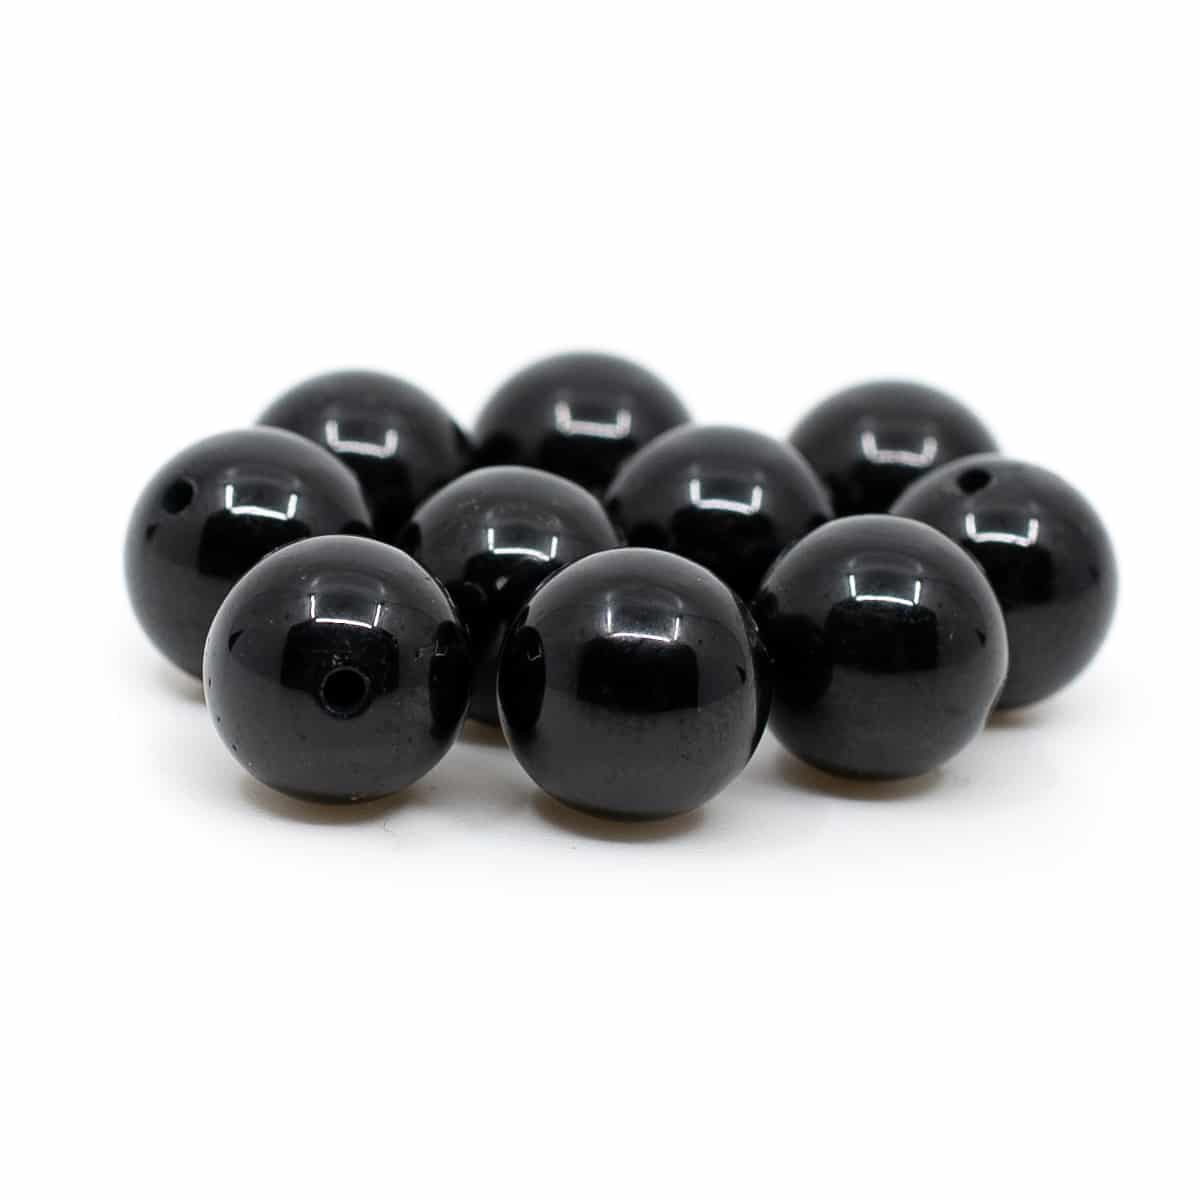 Edelstein Lose Perlen Obsidian - 10 St-ck (8 mm)